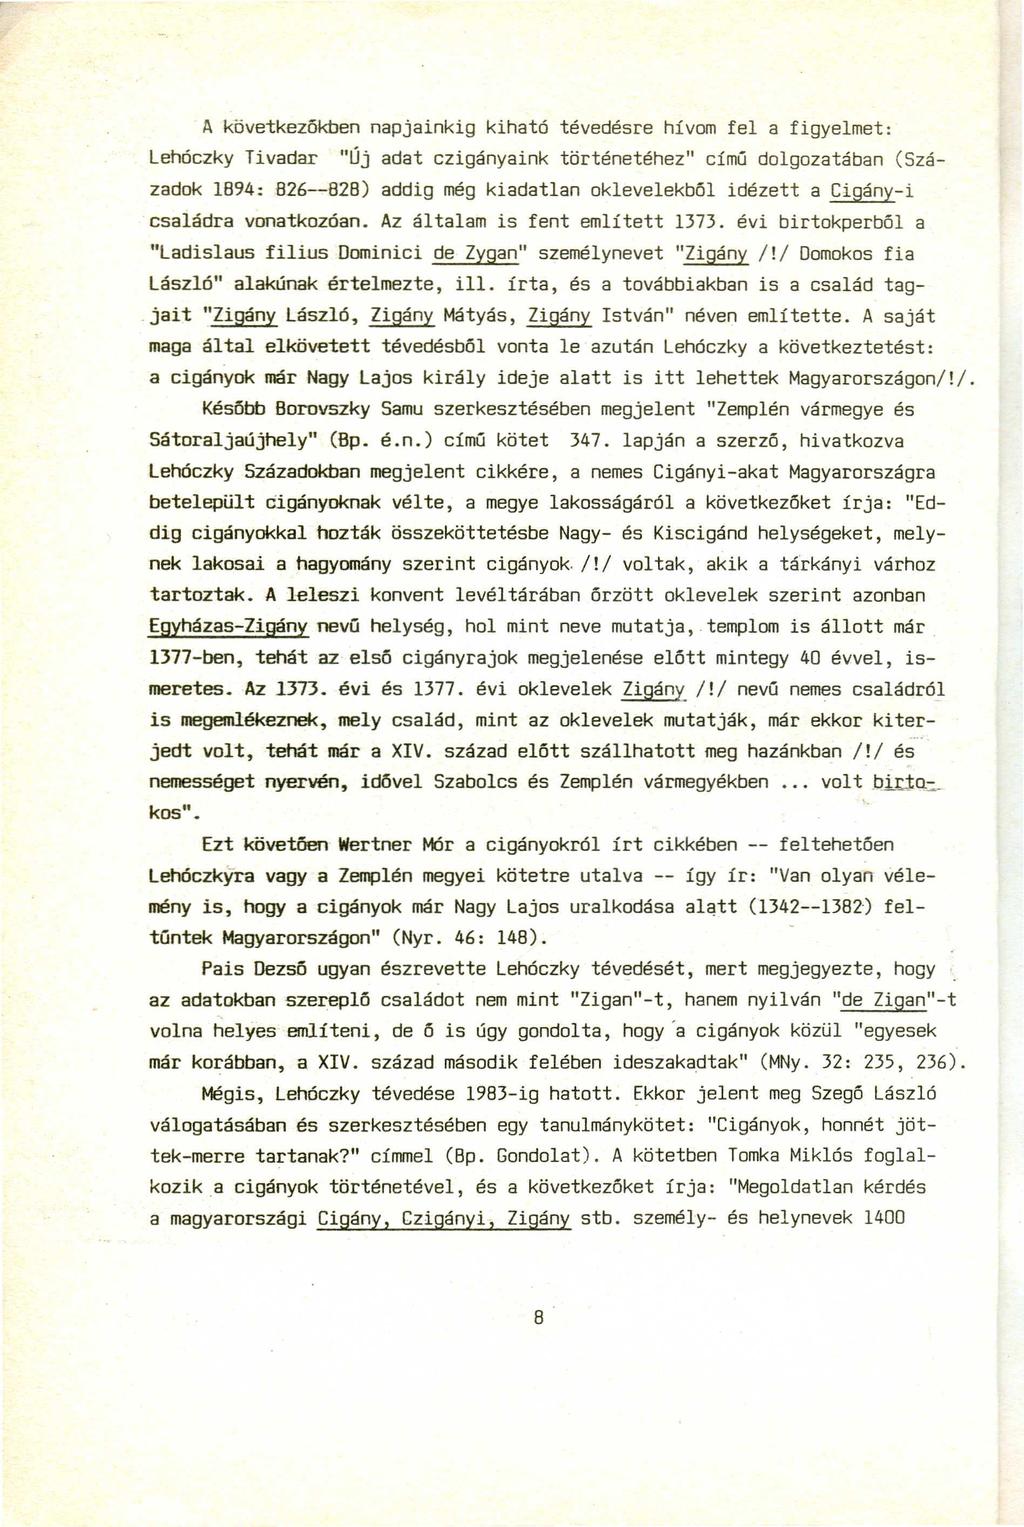 A következőkben napjainkig kiható tévedésre hívom fel a figyelmet: Lehóczky Tivadar "Új adat czigányaink történetéhez" című dolgozatában (Századok 1894: B26--828) addig még kiadatlan oklevelekből